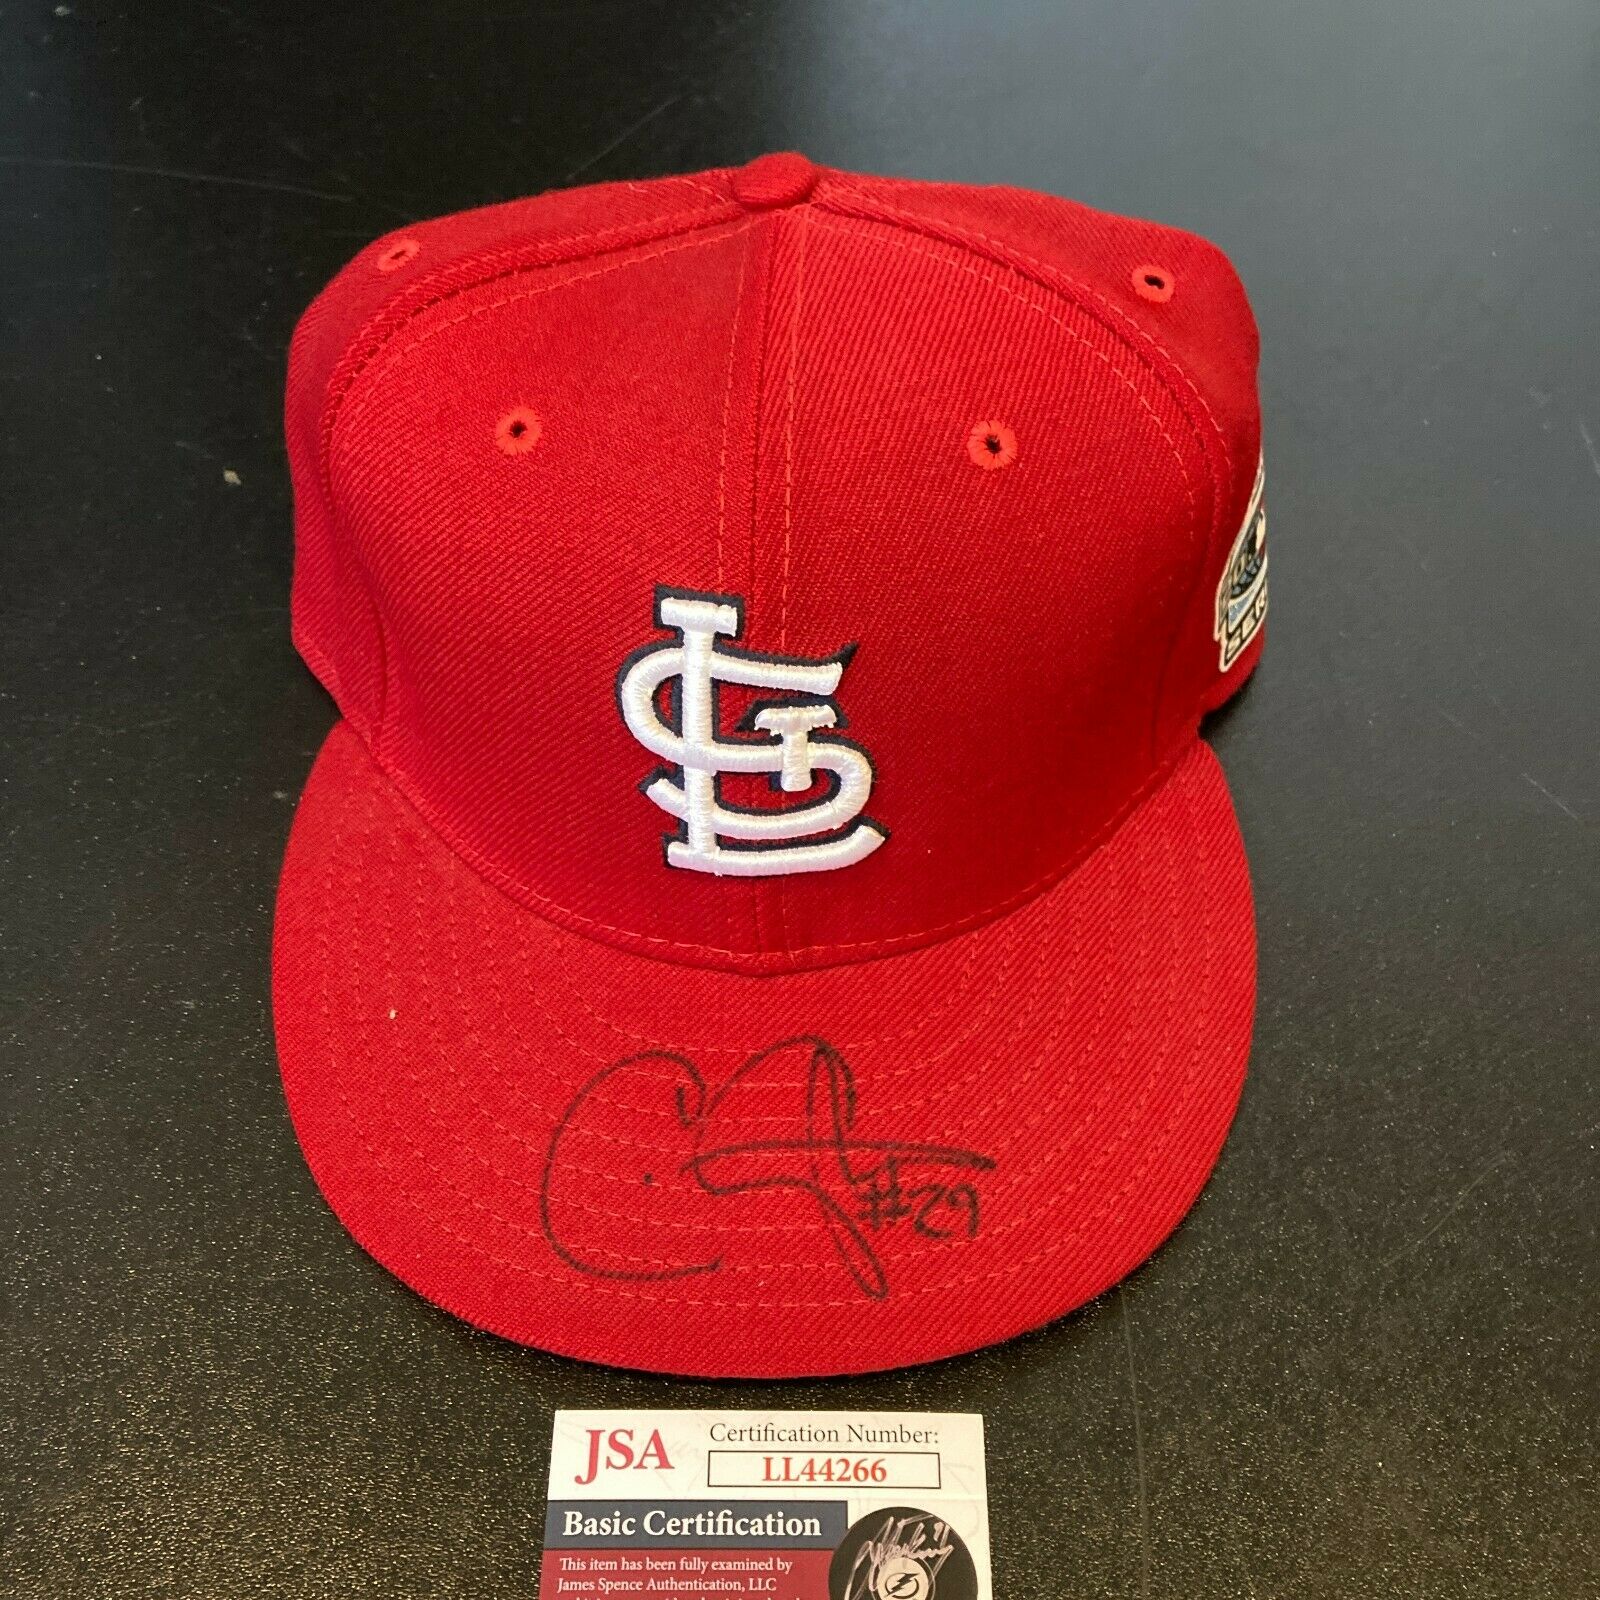 Chris Carpenter autographed Jersey (St. Louis Cardinals)